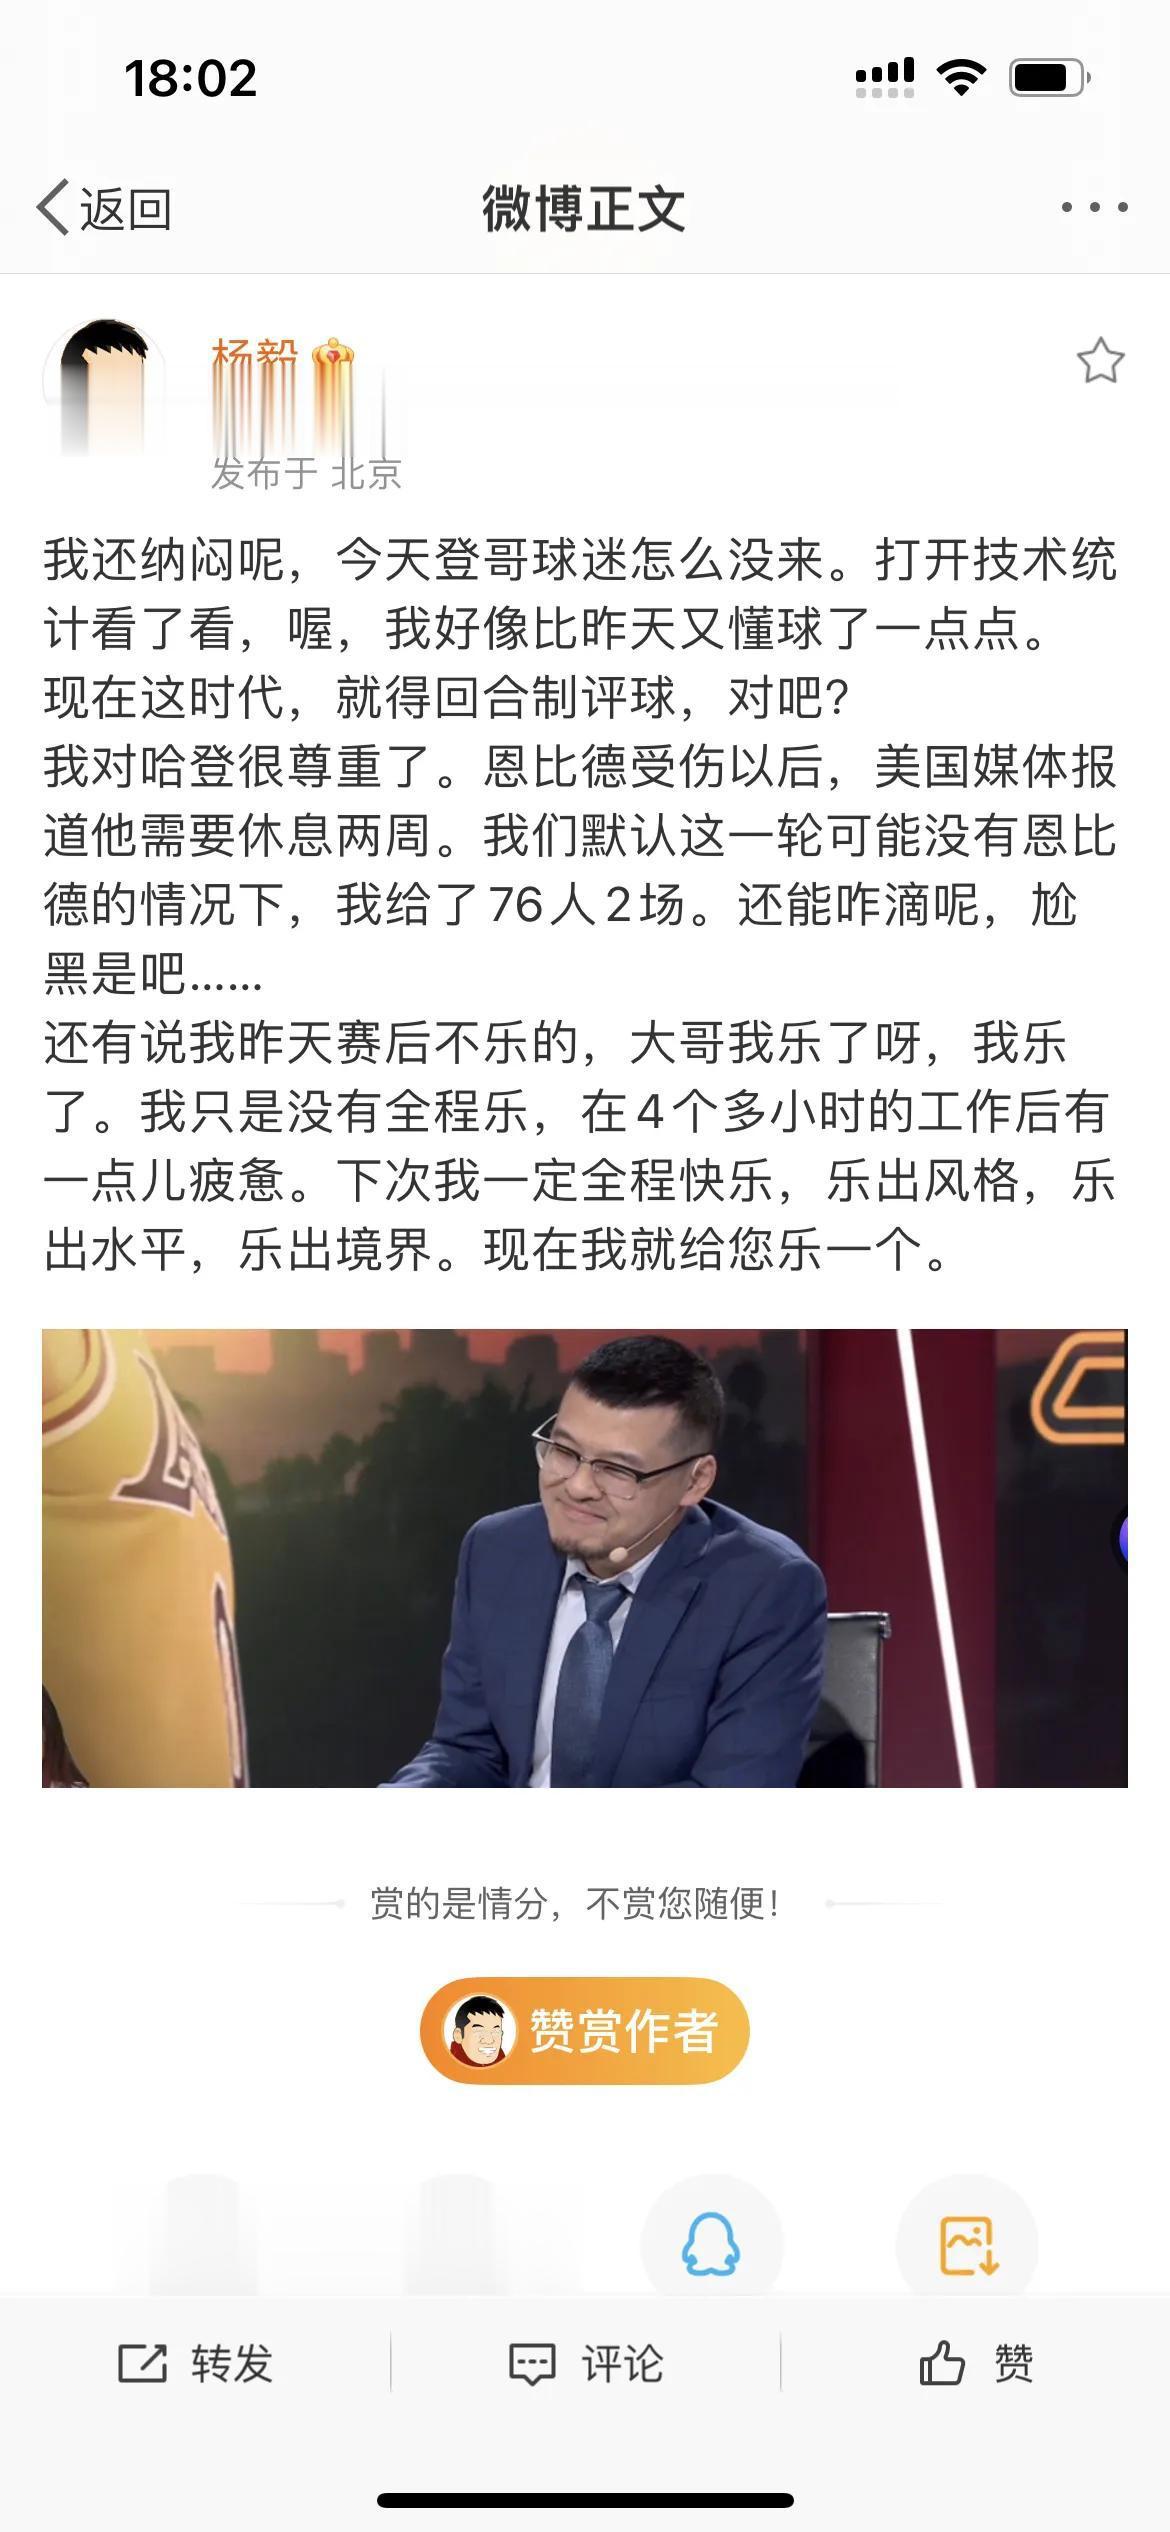 著名篮球评论员杨毅：不黑我有流量吗？你让自媒体大哥换一个人黑看看有没有流量！

(1)